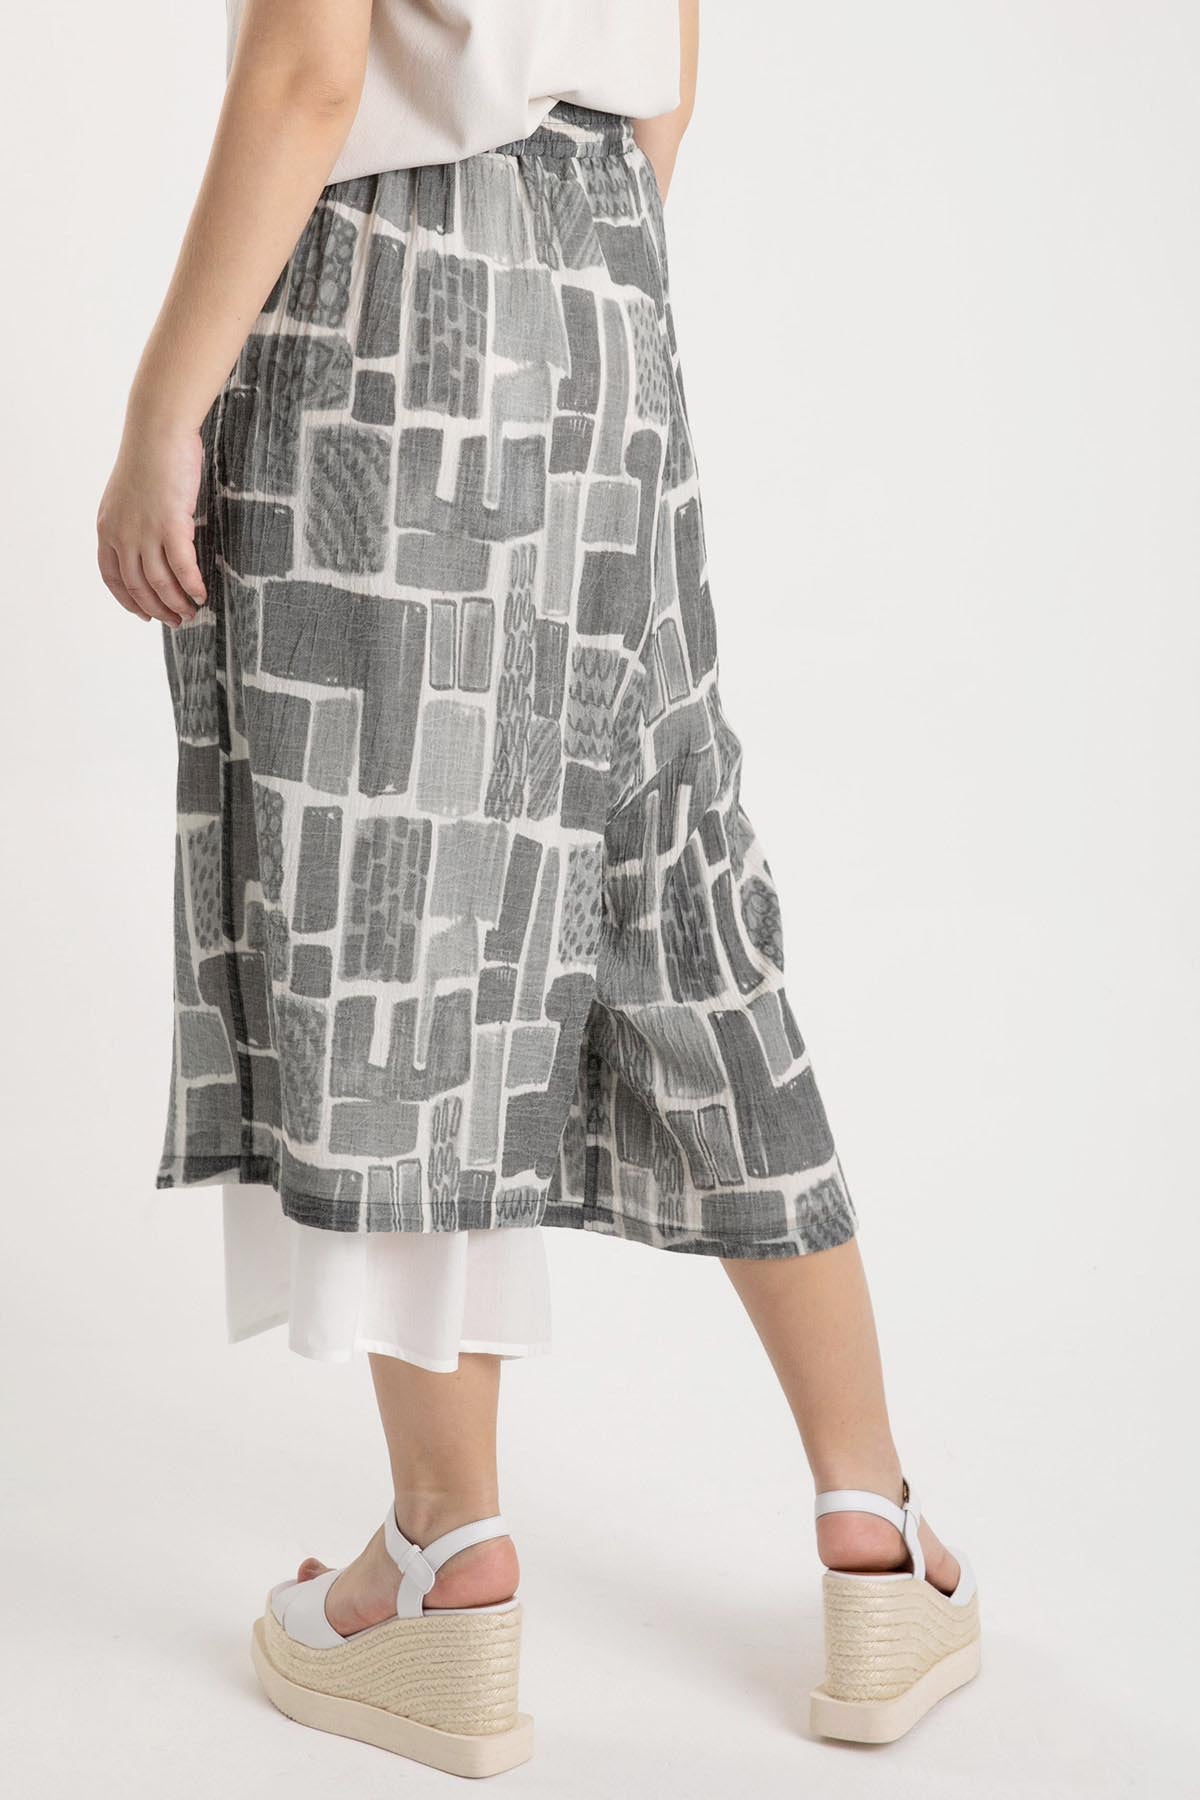 Crea Concept Beli Lastikli Paça Detaylı Pantolon-Libas Trendy Fashion Store